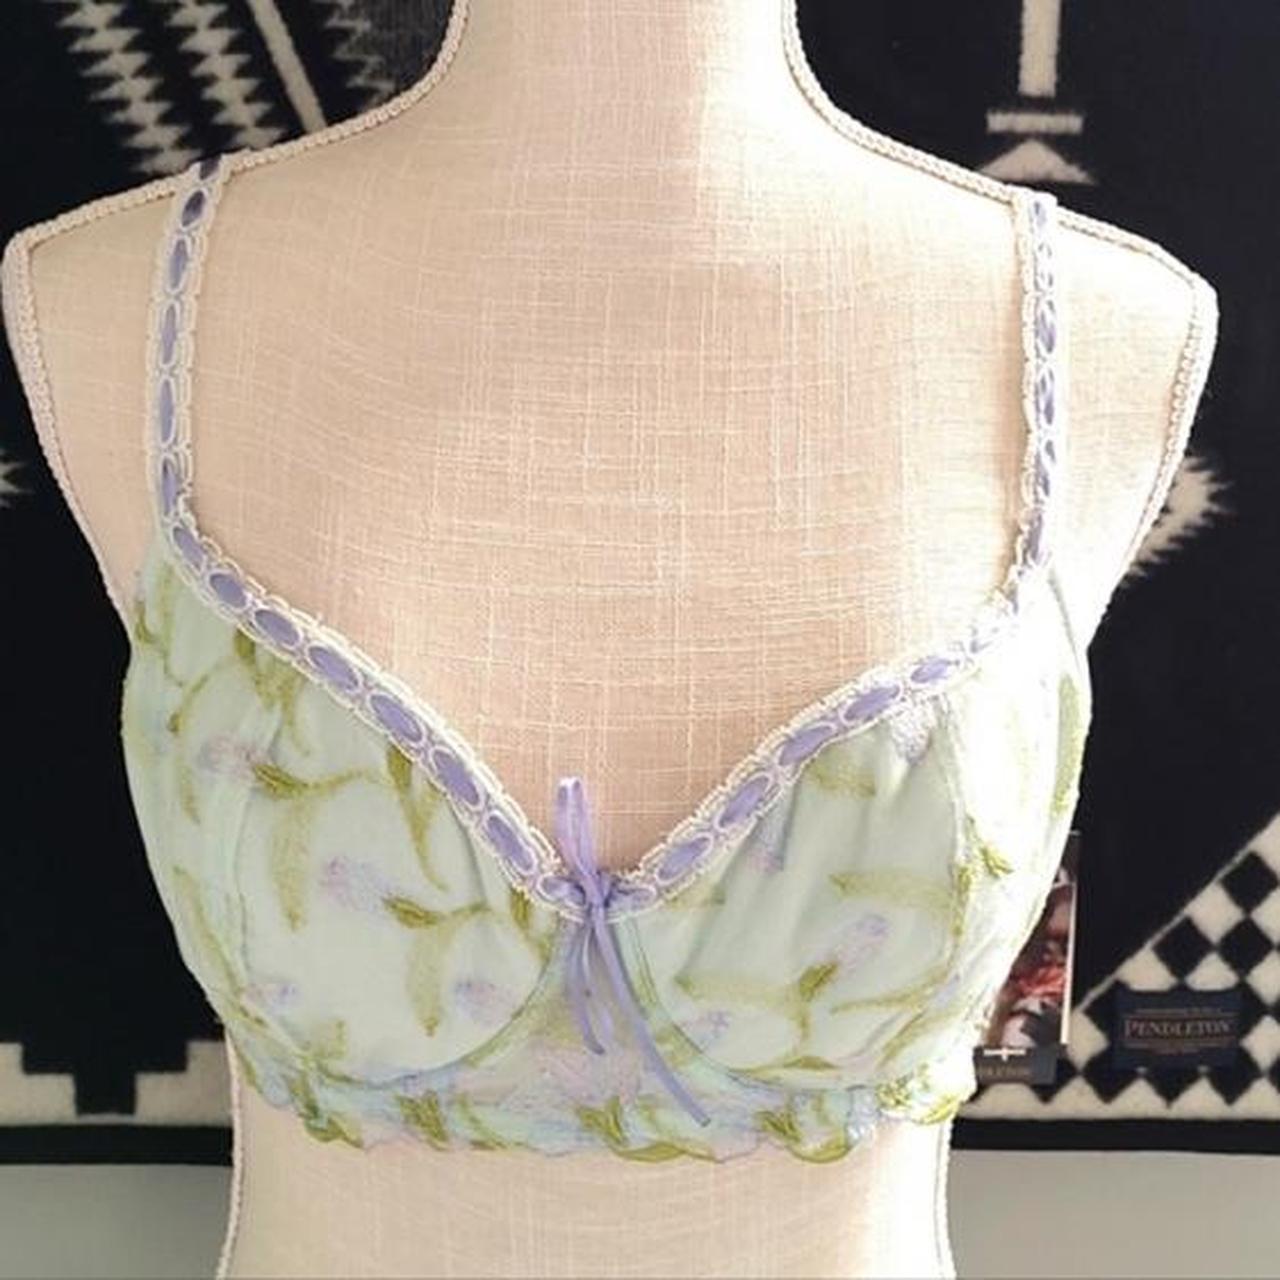 Vintage Victoria secret floral embroidered bra - Depop